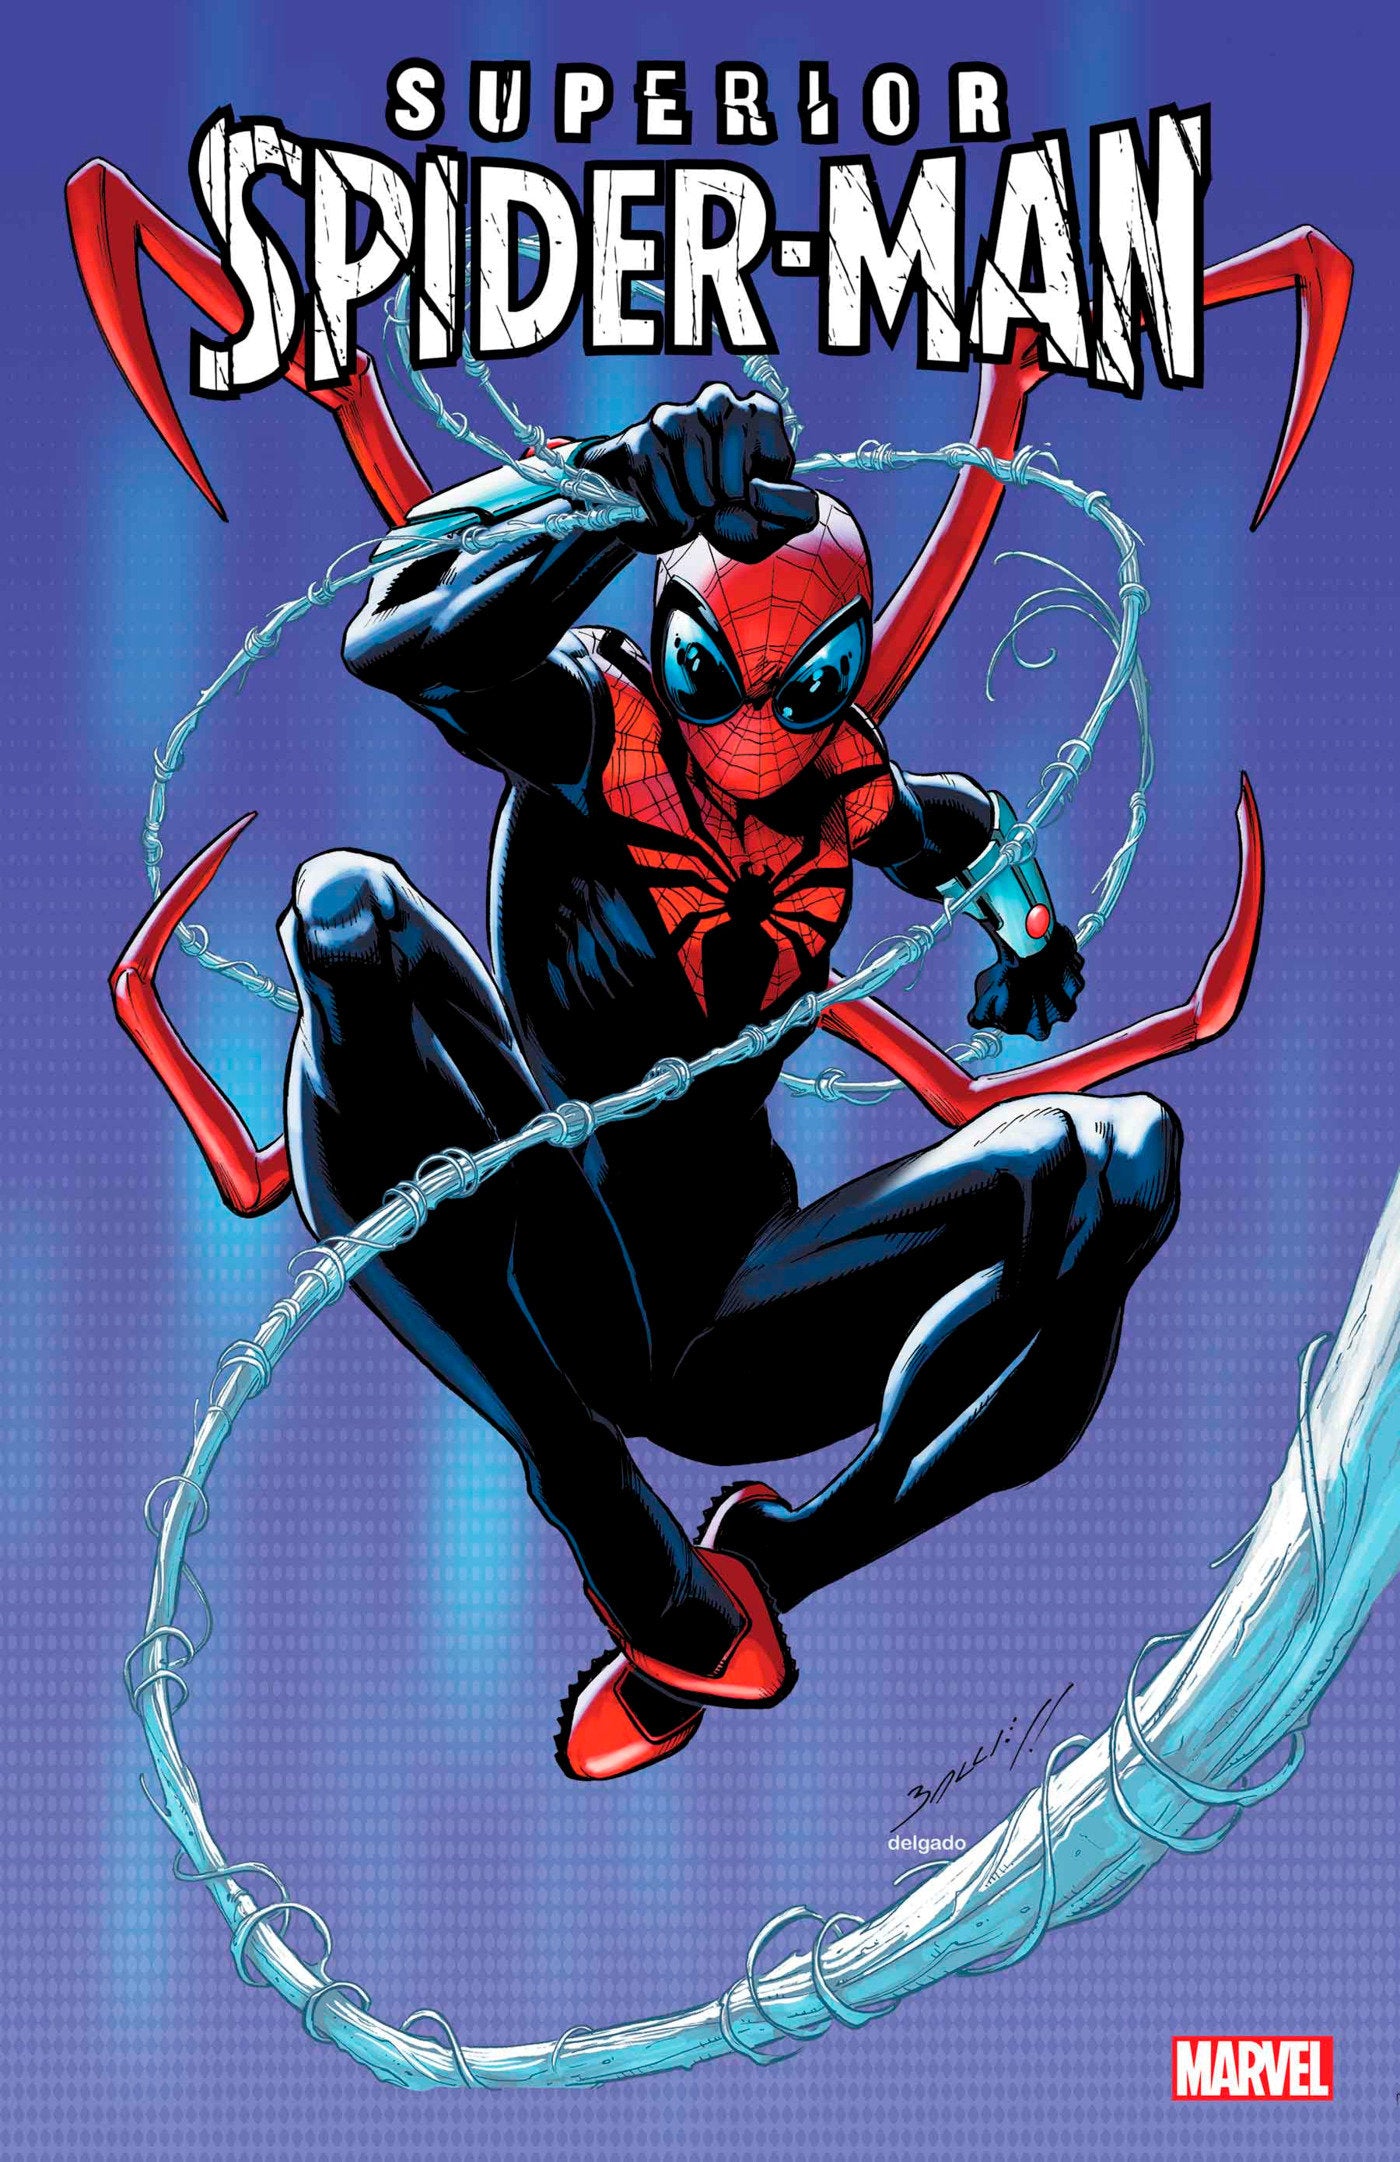 Superior Spider-Man 1 | Game Master's Emporium (The New GME)